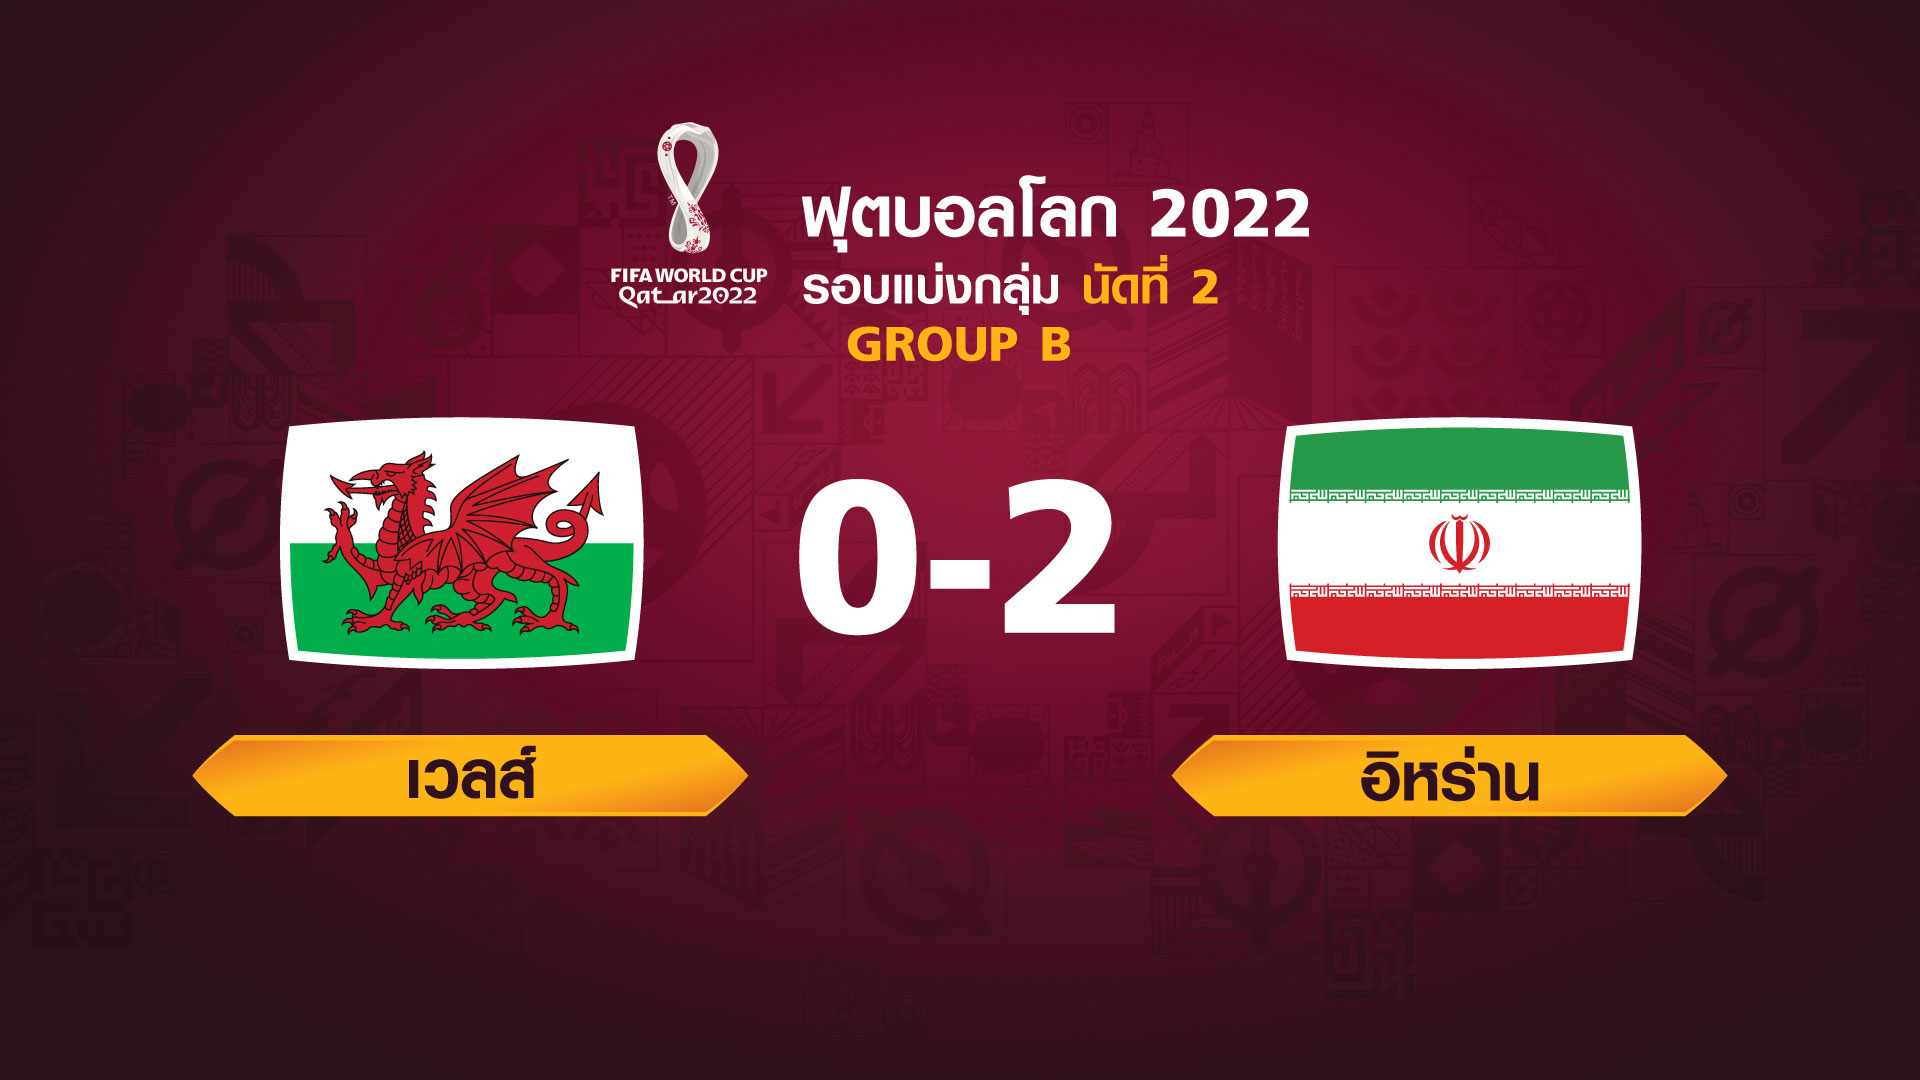 ฟุตบอลโลก 2022 รอบแบ่งกลุ่ม นัดที่ 2 ระหว่าง Wales vs Iran